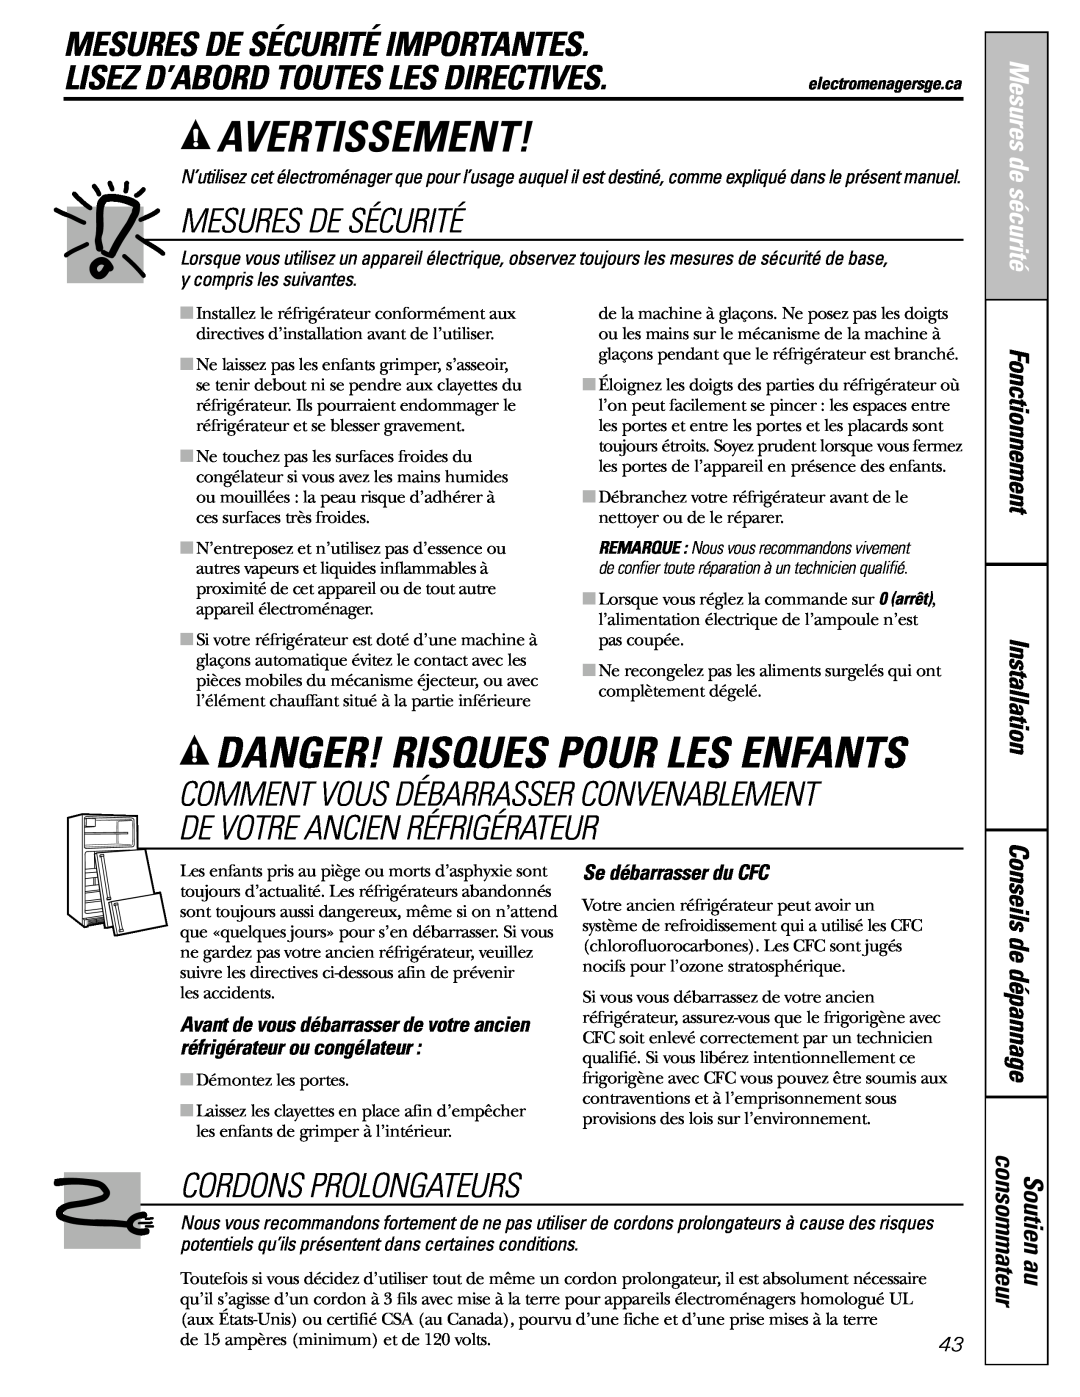 GE MODELS 23 AND 25 Avertissement, Danger! Risques Pour Les Enfants, Mesures De Sécurité Importantes, Fonctionnement 